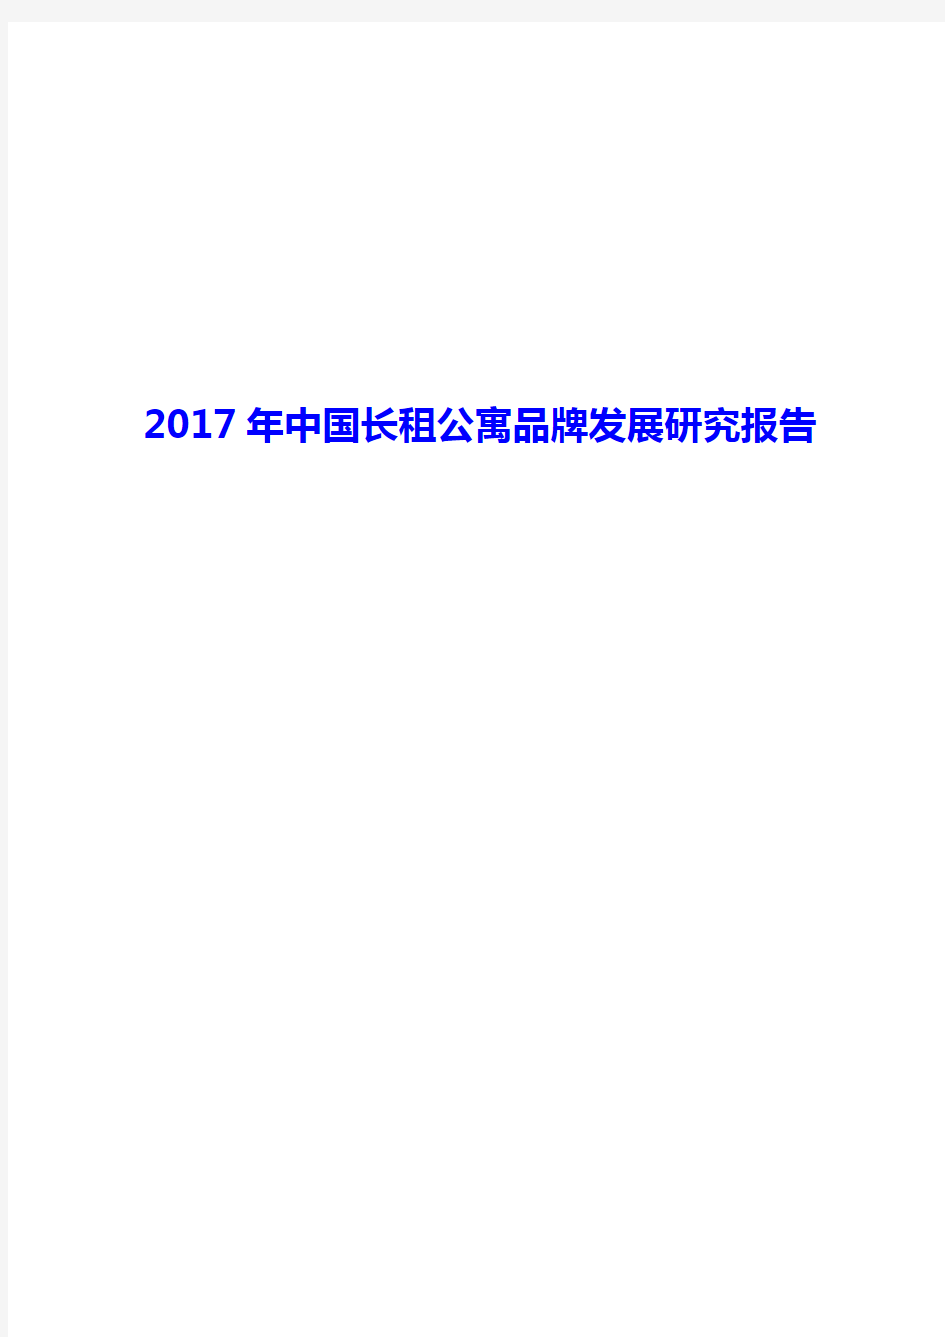 2017年中国长租公寓品牌发展研究报告